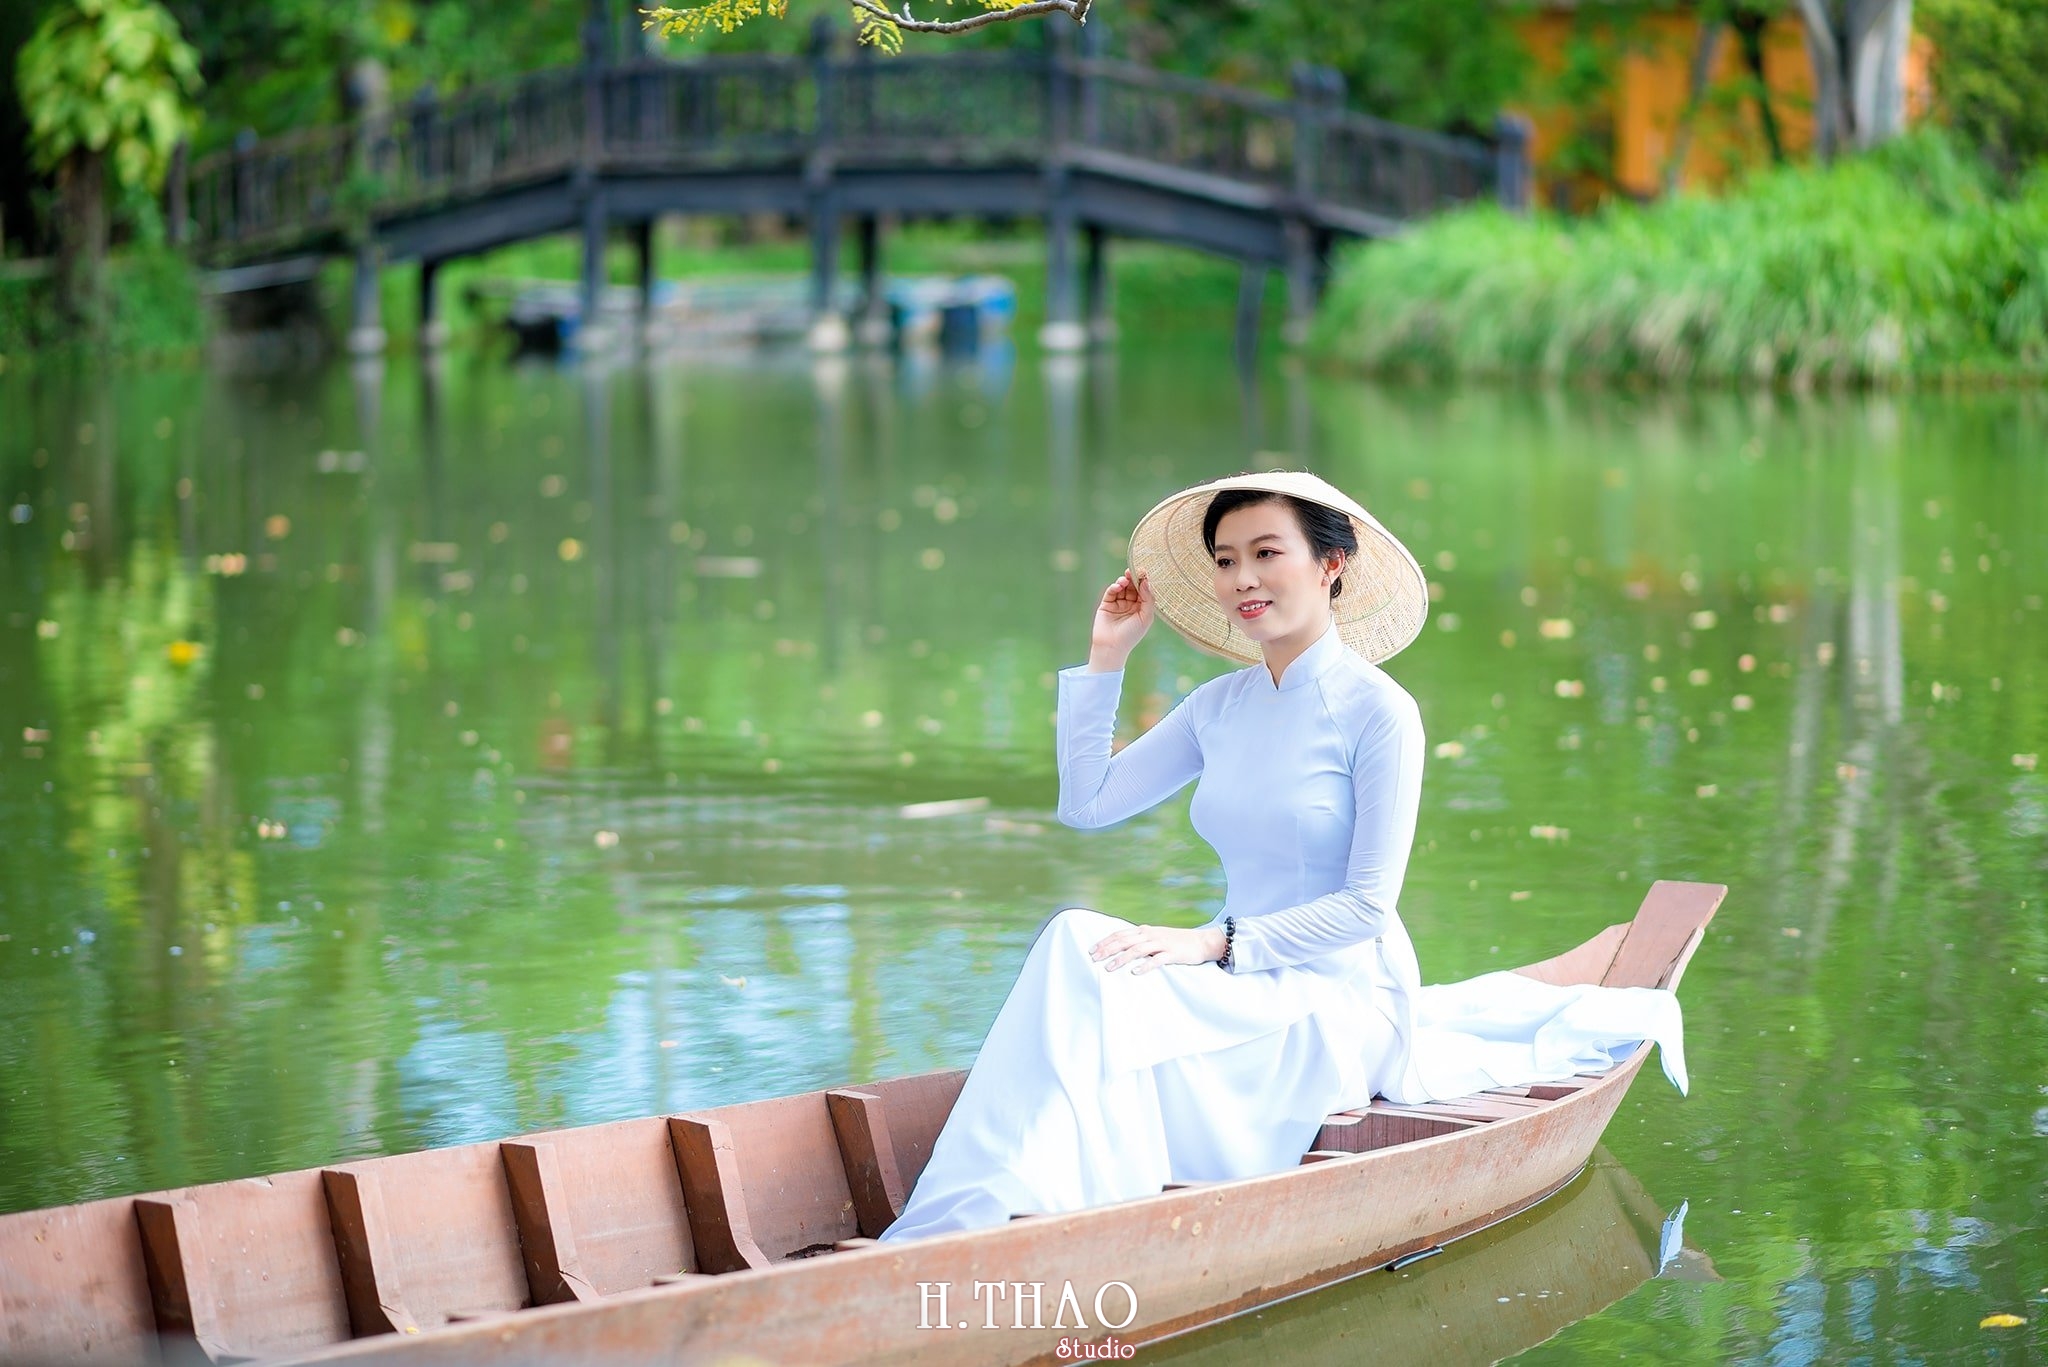 Ao dai trang 9 1 - Địa điểm chụp ảnh áo dài đẹp ở Thành phố Hồ Chí Minh